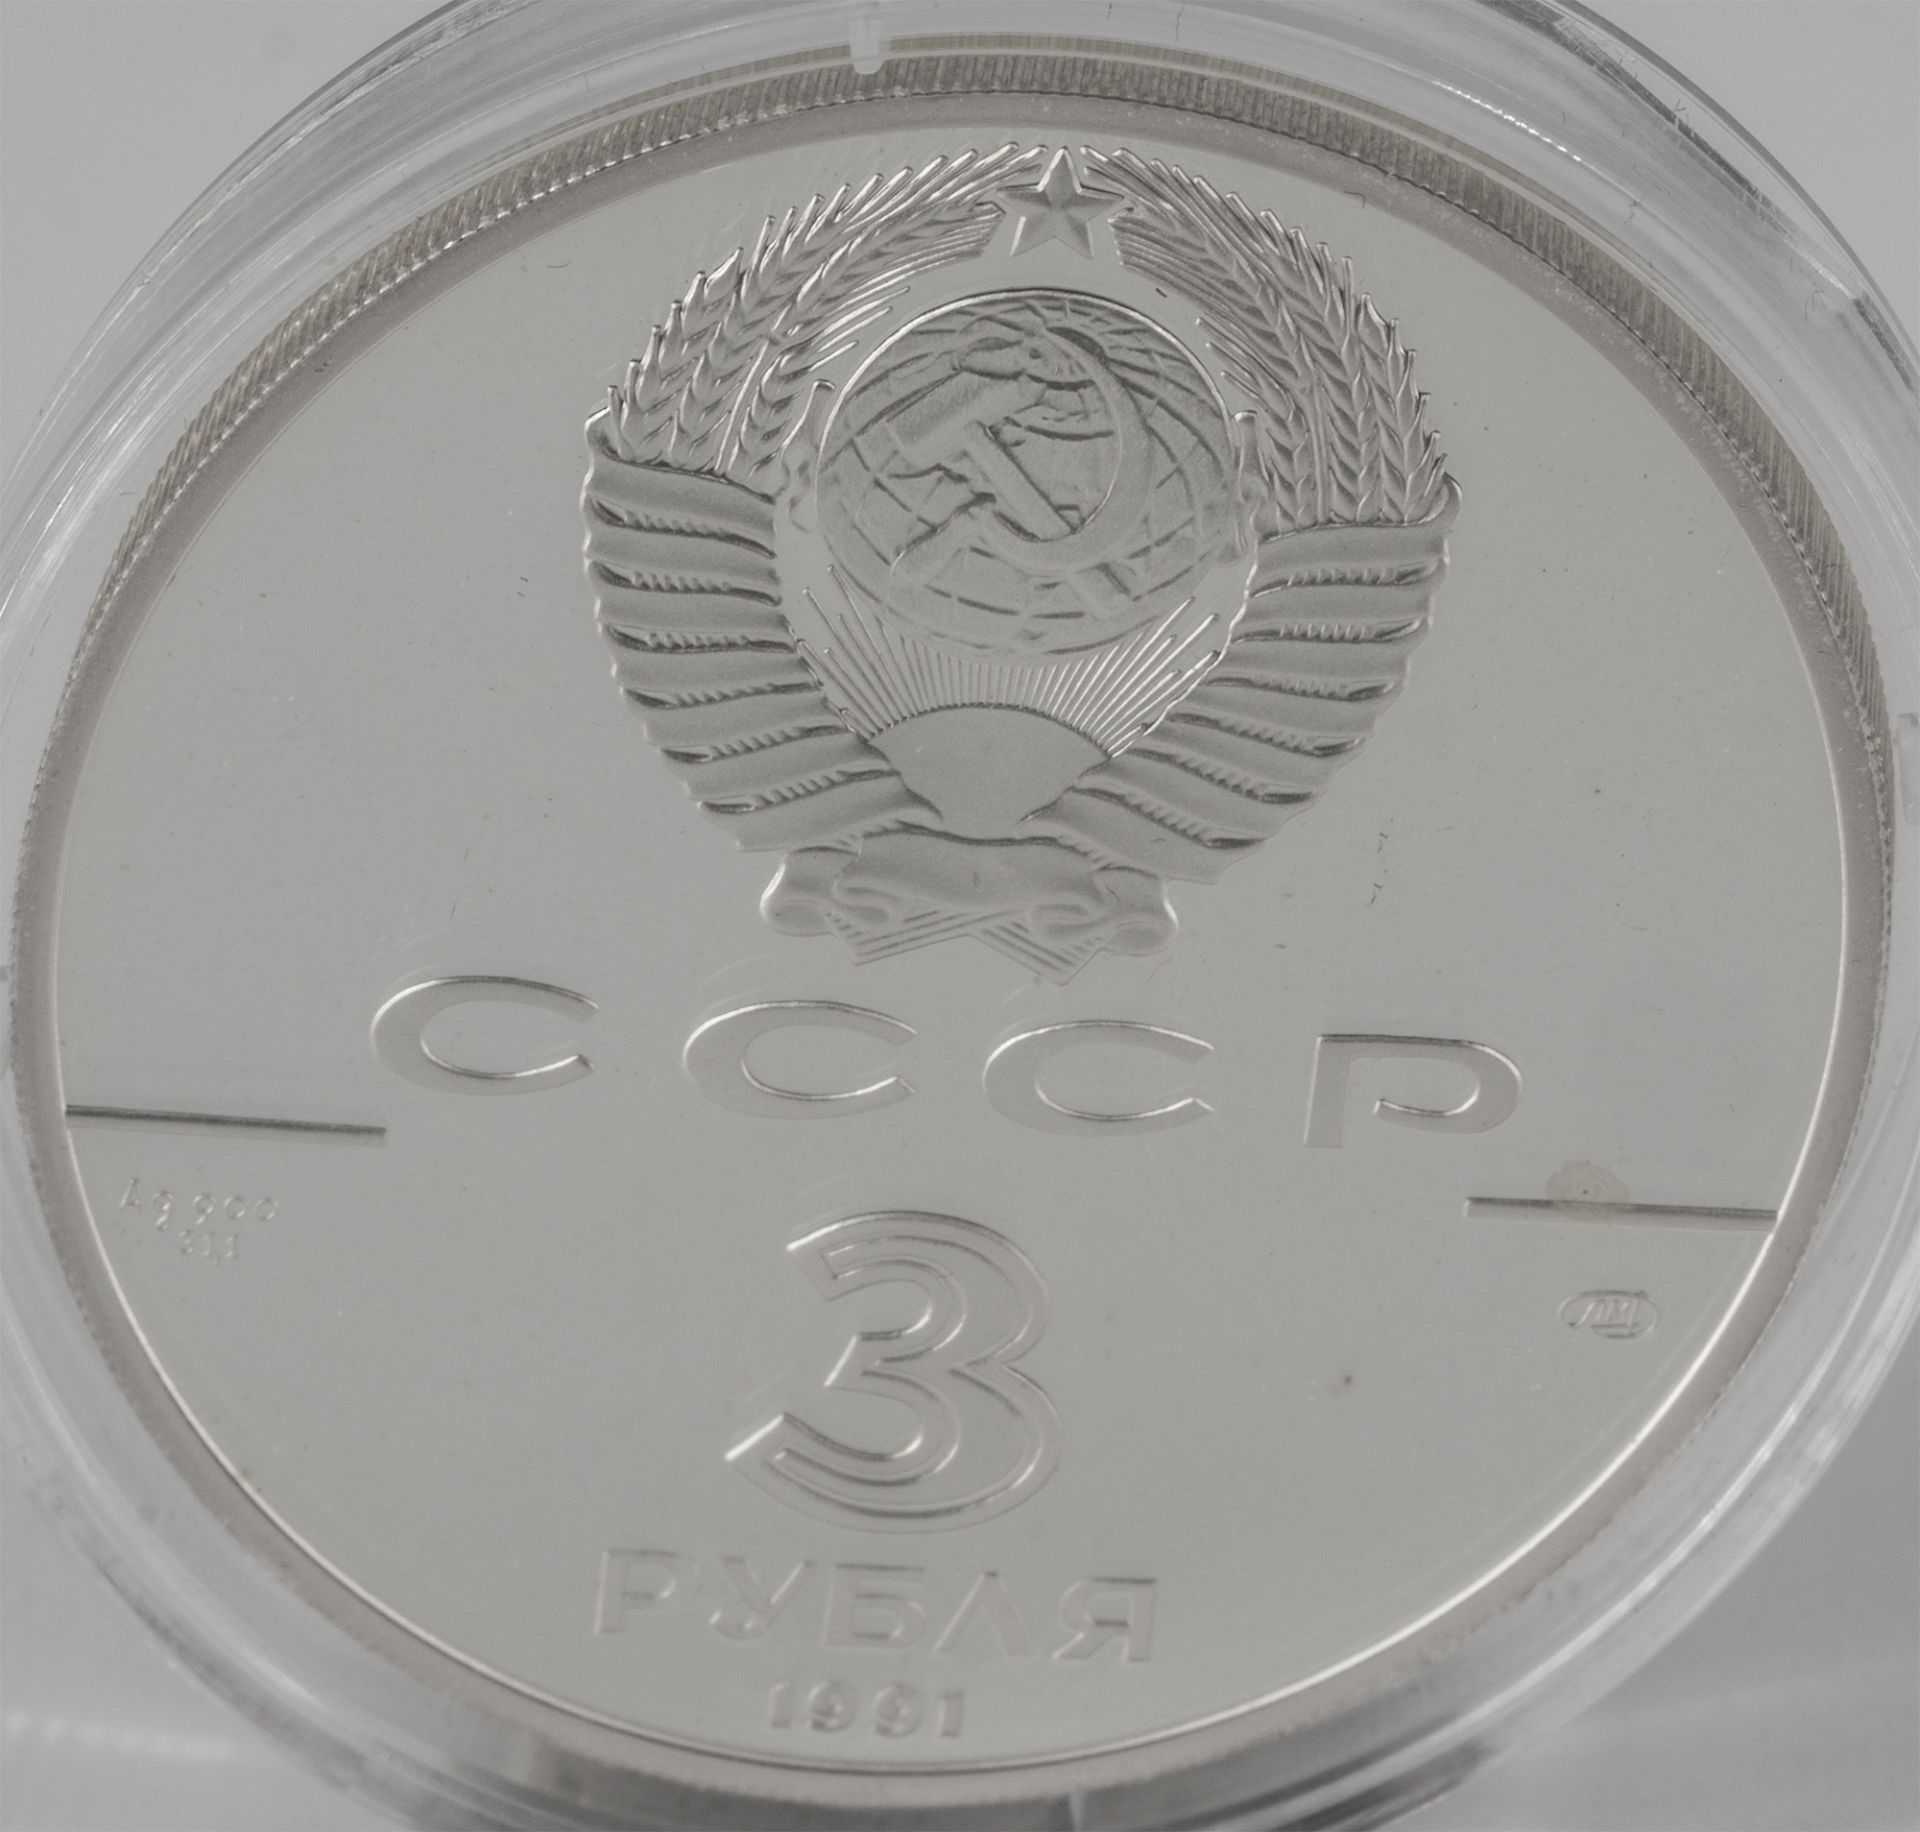 Russland 1991, 3 Rubel - Silbermünze, "Fort Ross", Silber 900, Gewicht: 31,1 g. Erhaltung: PP. - Image 2 of 2